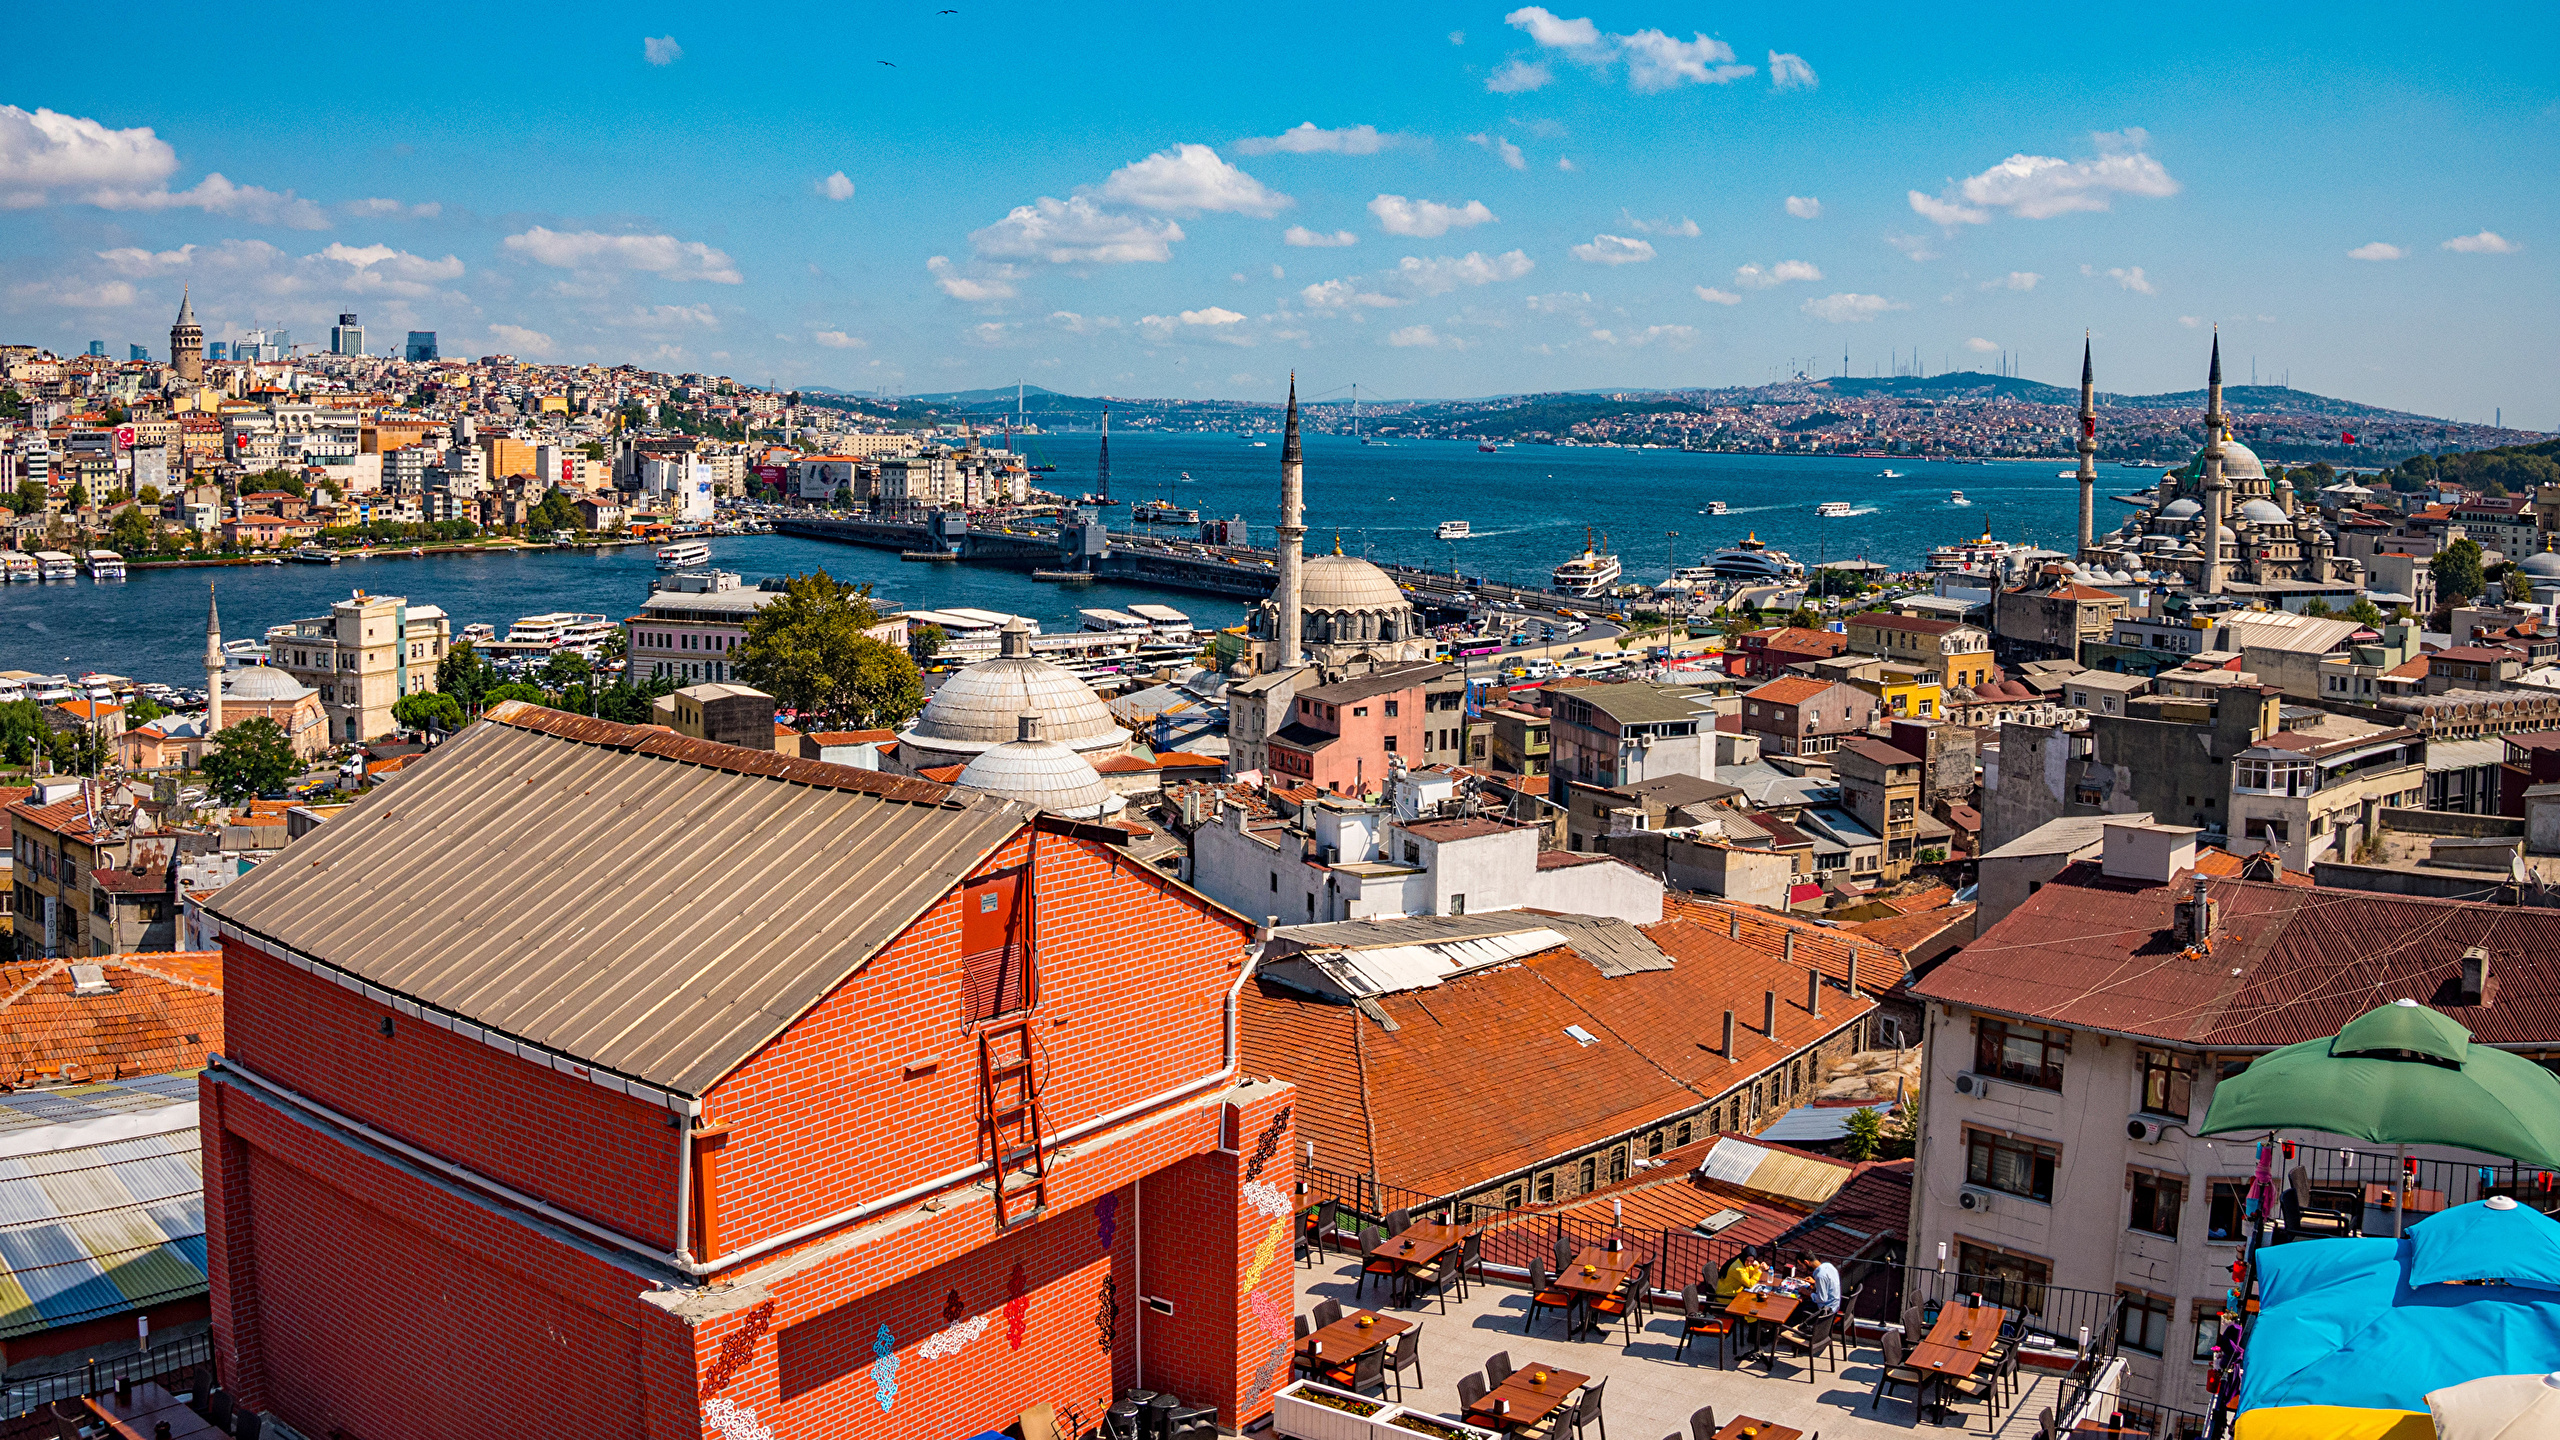 Картинка Стамбул Мечеть Турция Дома город 2560x1440 Здания Города